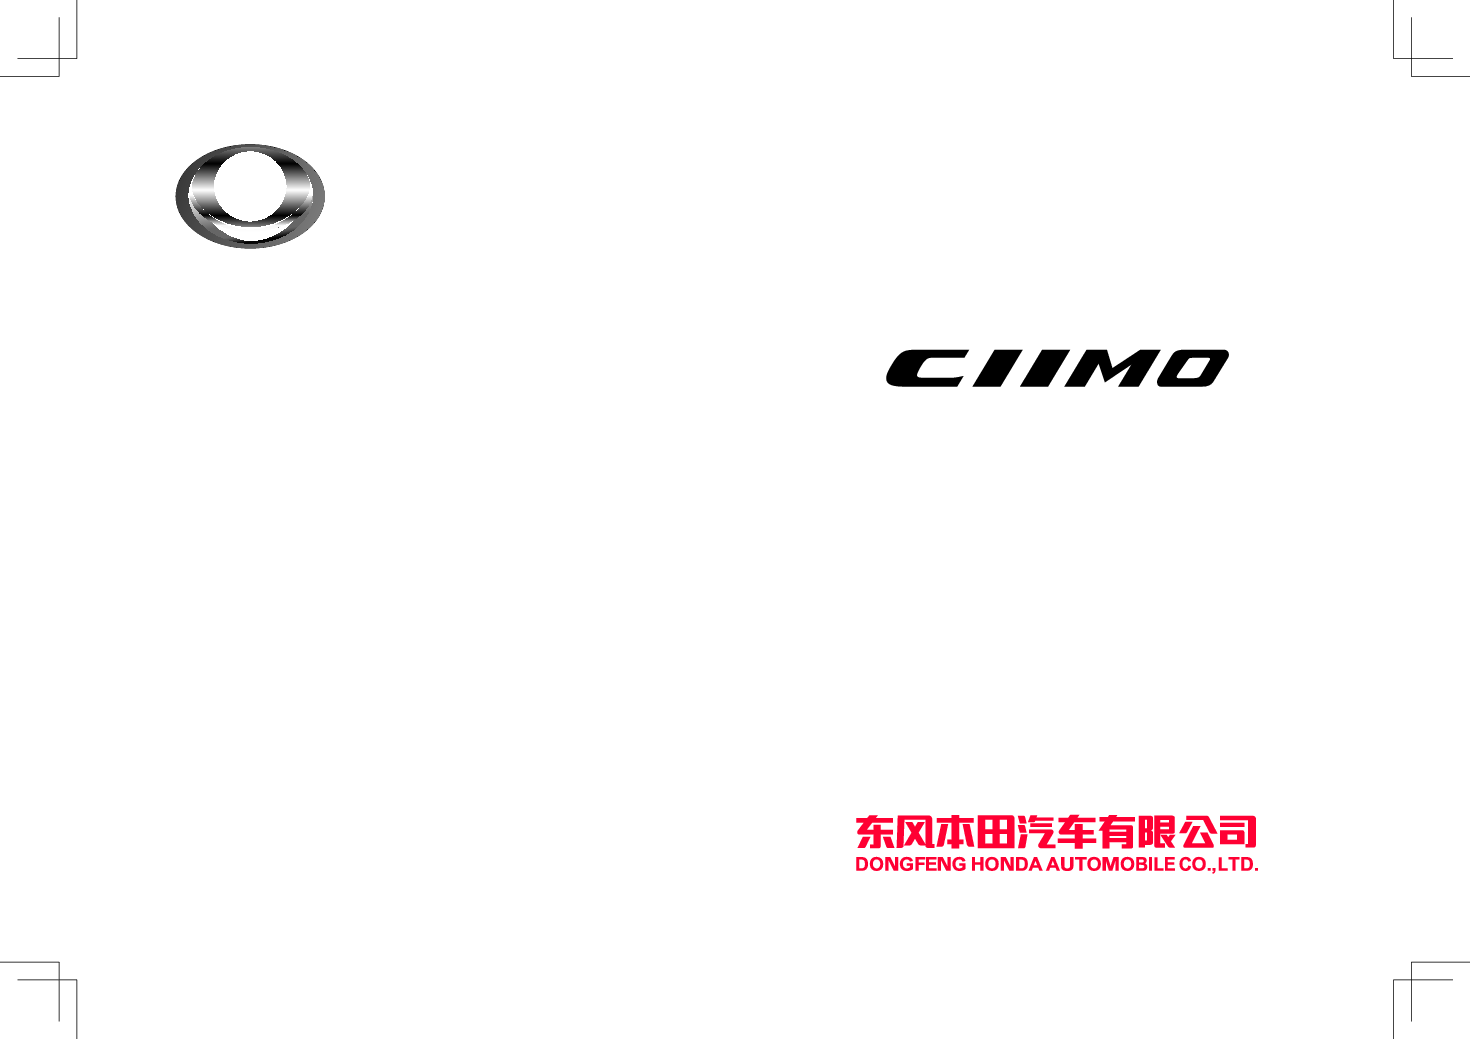 本田 Honda CIIMO 思铭 2015 用户手册 封面